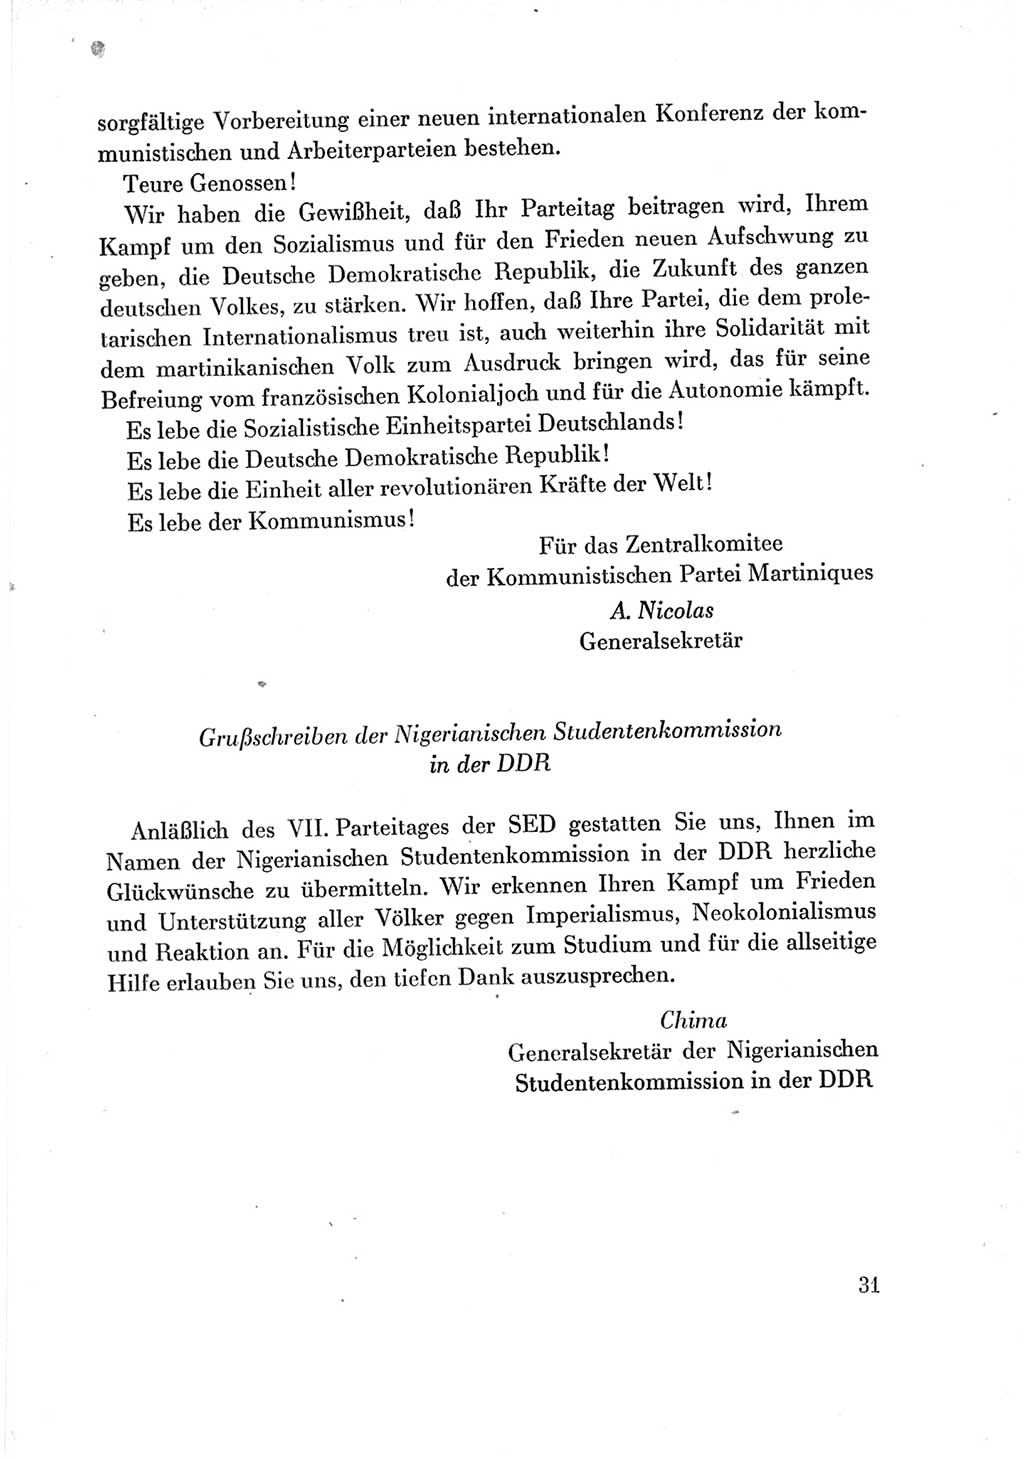 Protokoll der Verhandlungen des Ⅶ. Parteitages der Sozialistischen Einheitspartei Deutschlands (SED) [Deutsche Demokratische Republik (DDR)] 1967, Band Ⅲ, Seite 31 (Prot. Verh. Ⅶ. PT SED DDR 1967, Bd. Ⅲ, S. 31)